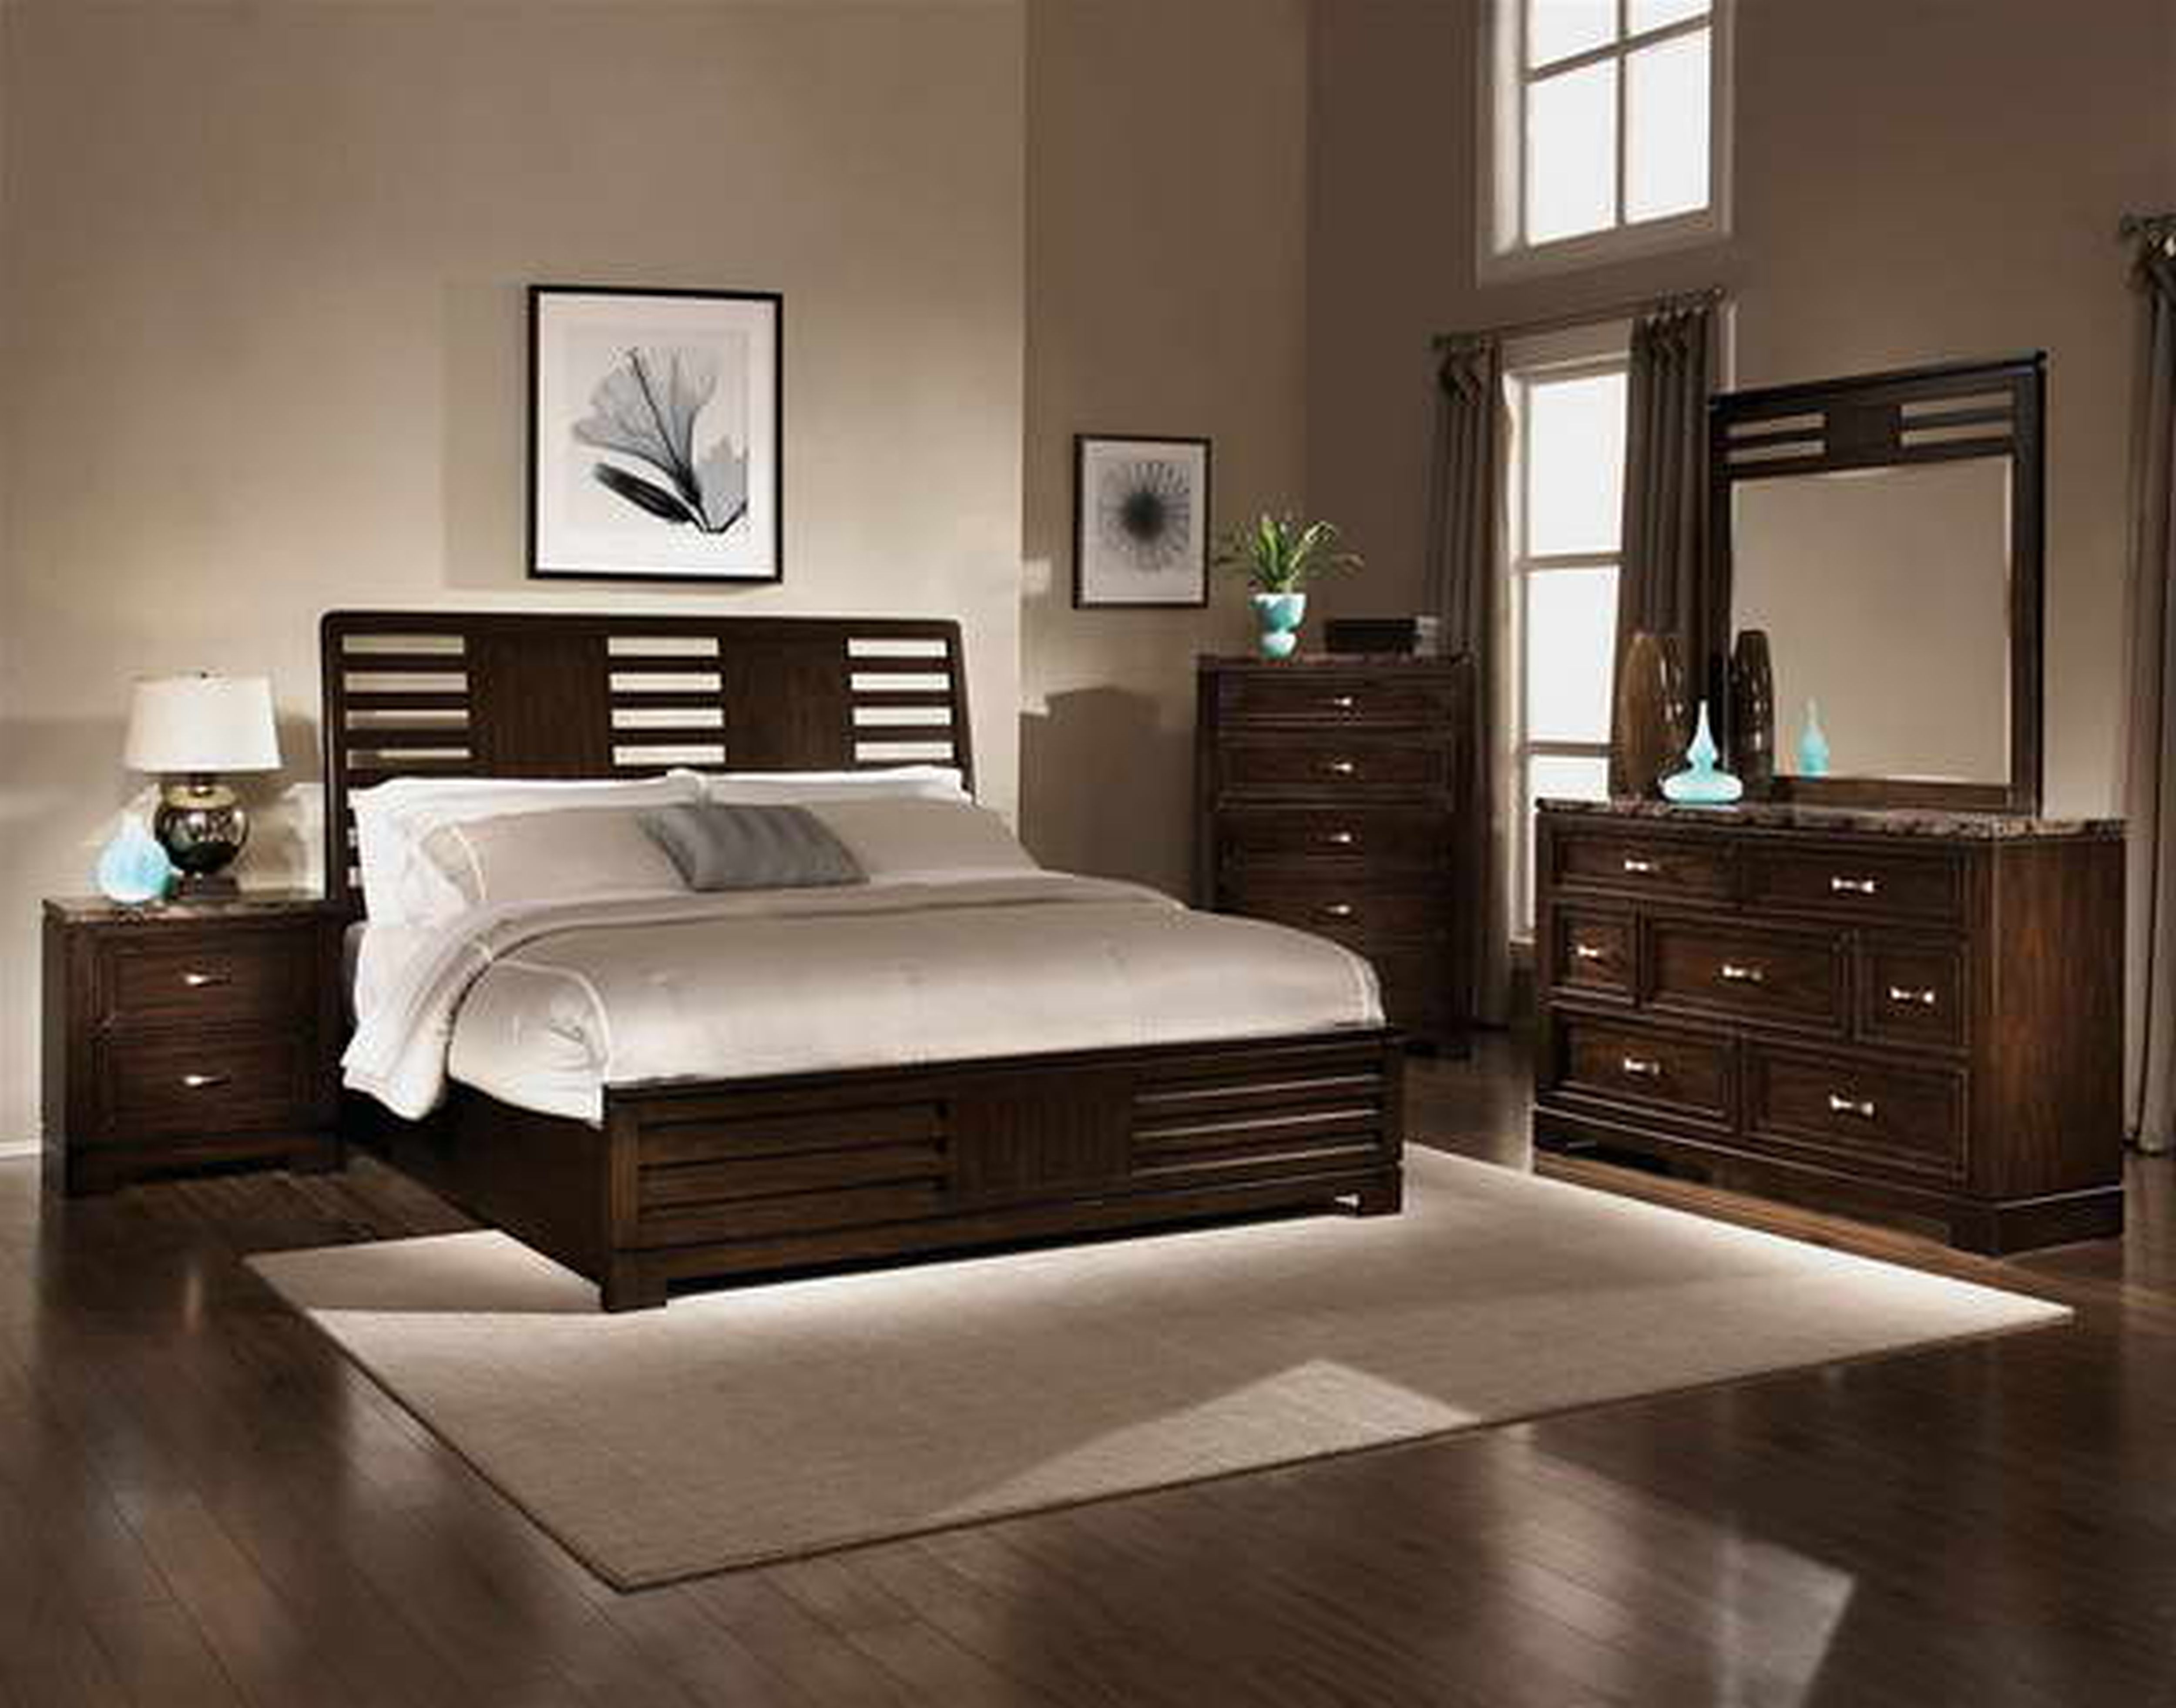 large bedroom furniture ideas photo - 5